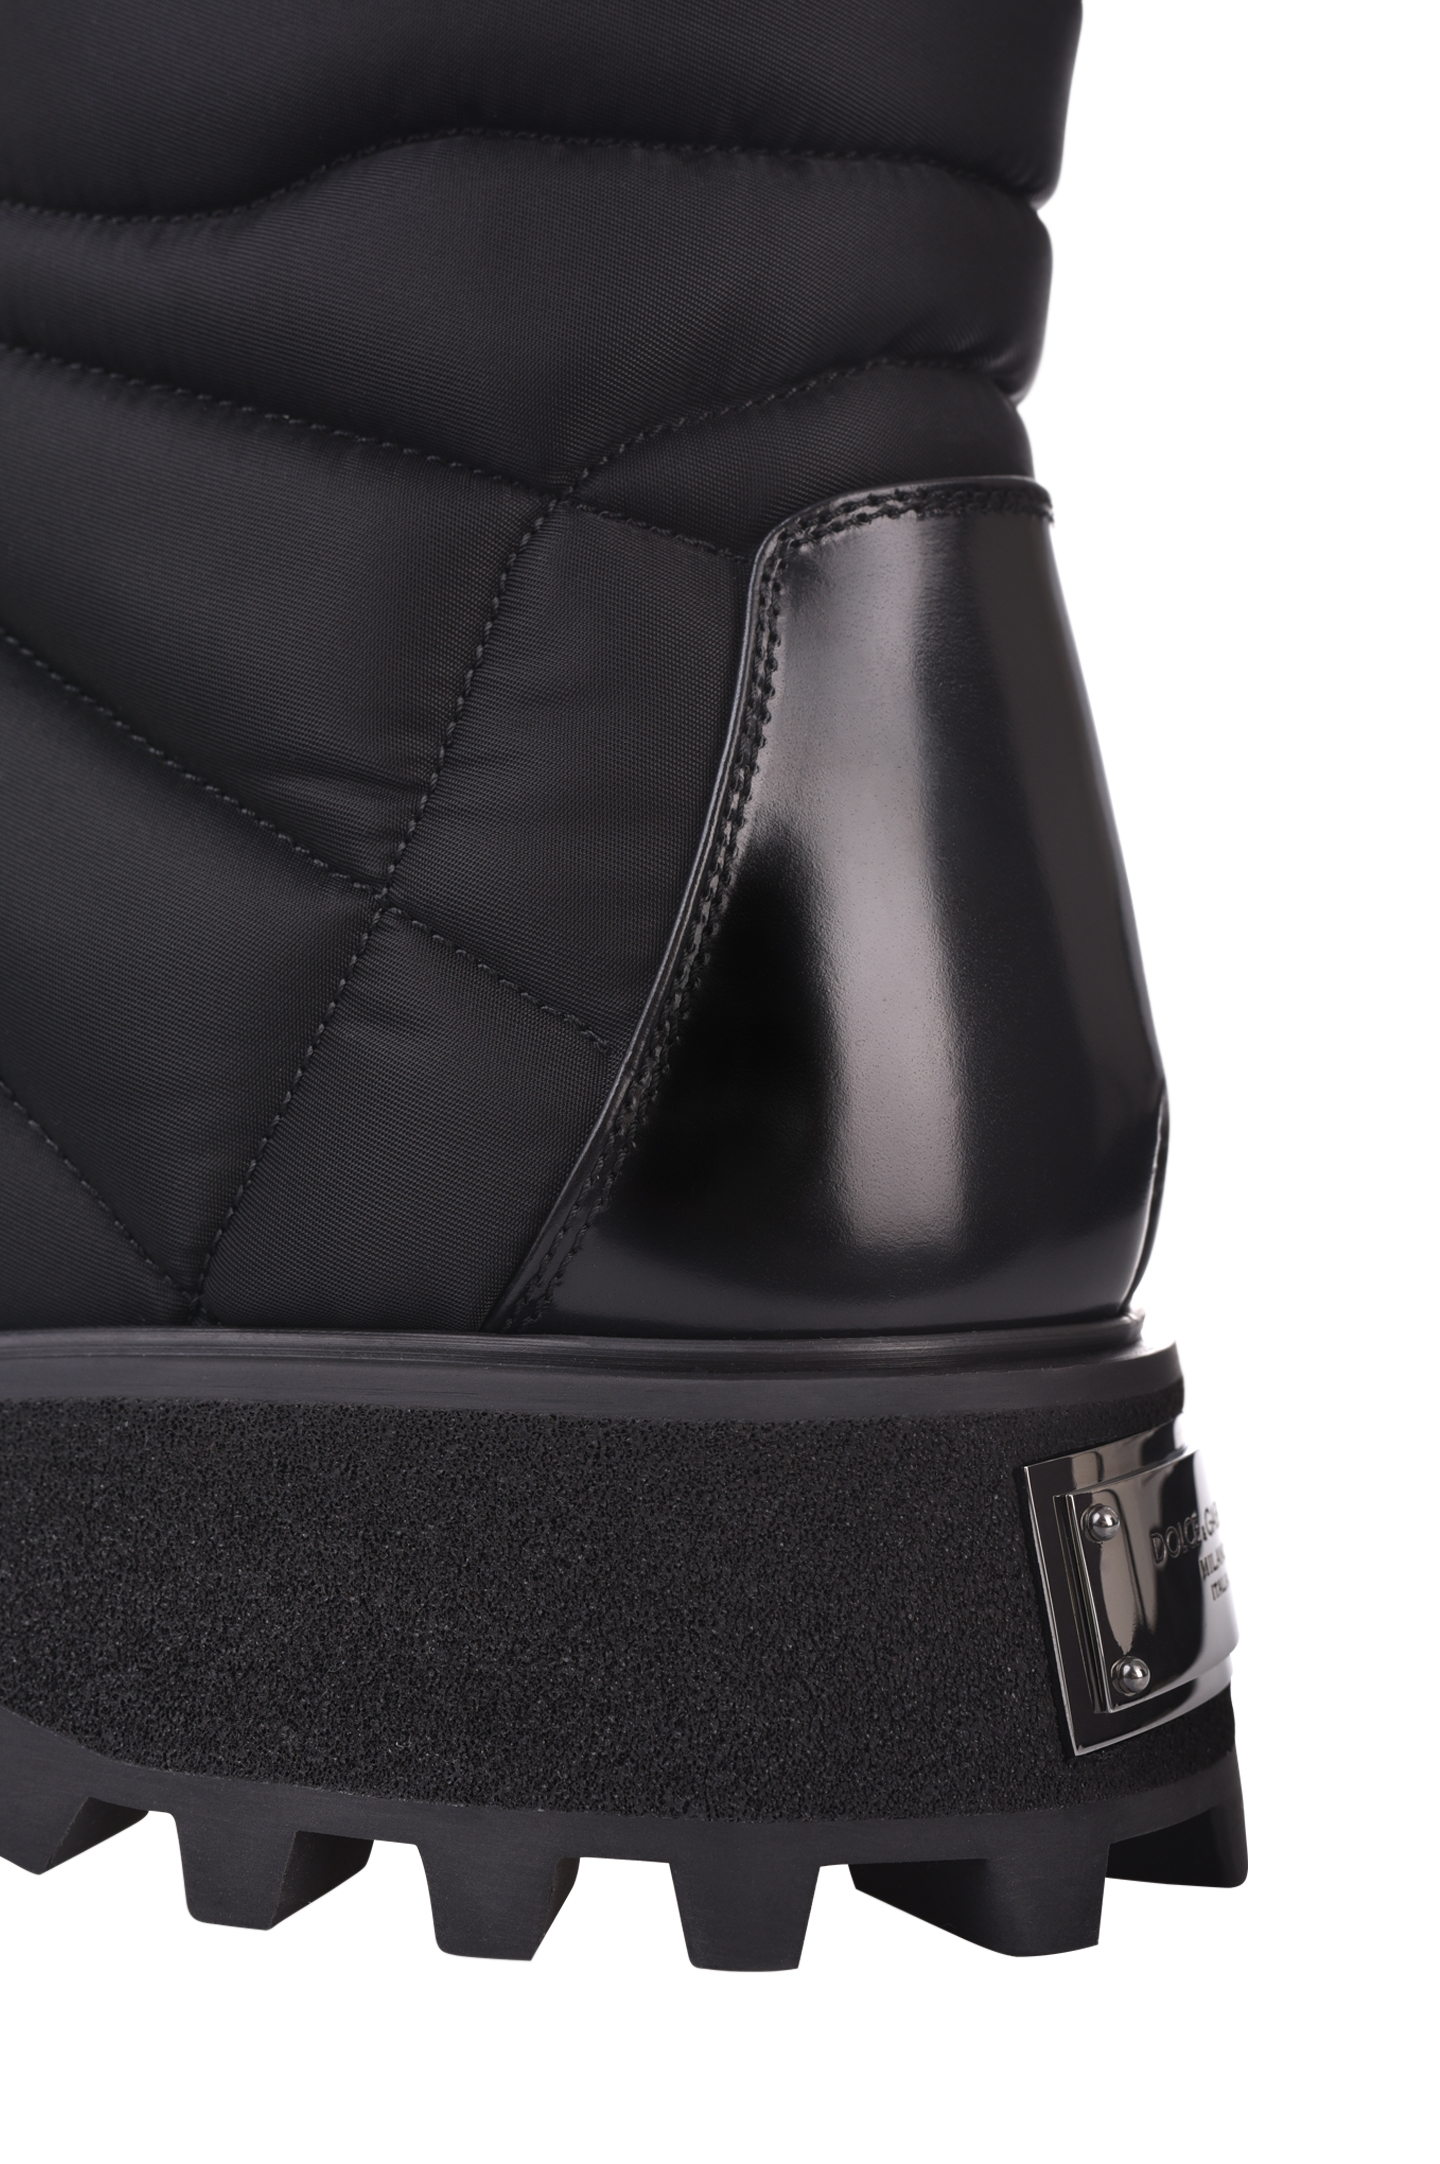 Ботинки DOLCE & GABBANA A60404 AQ302, цвет: Черный, Мужской